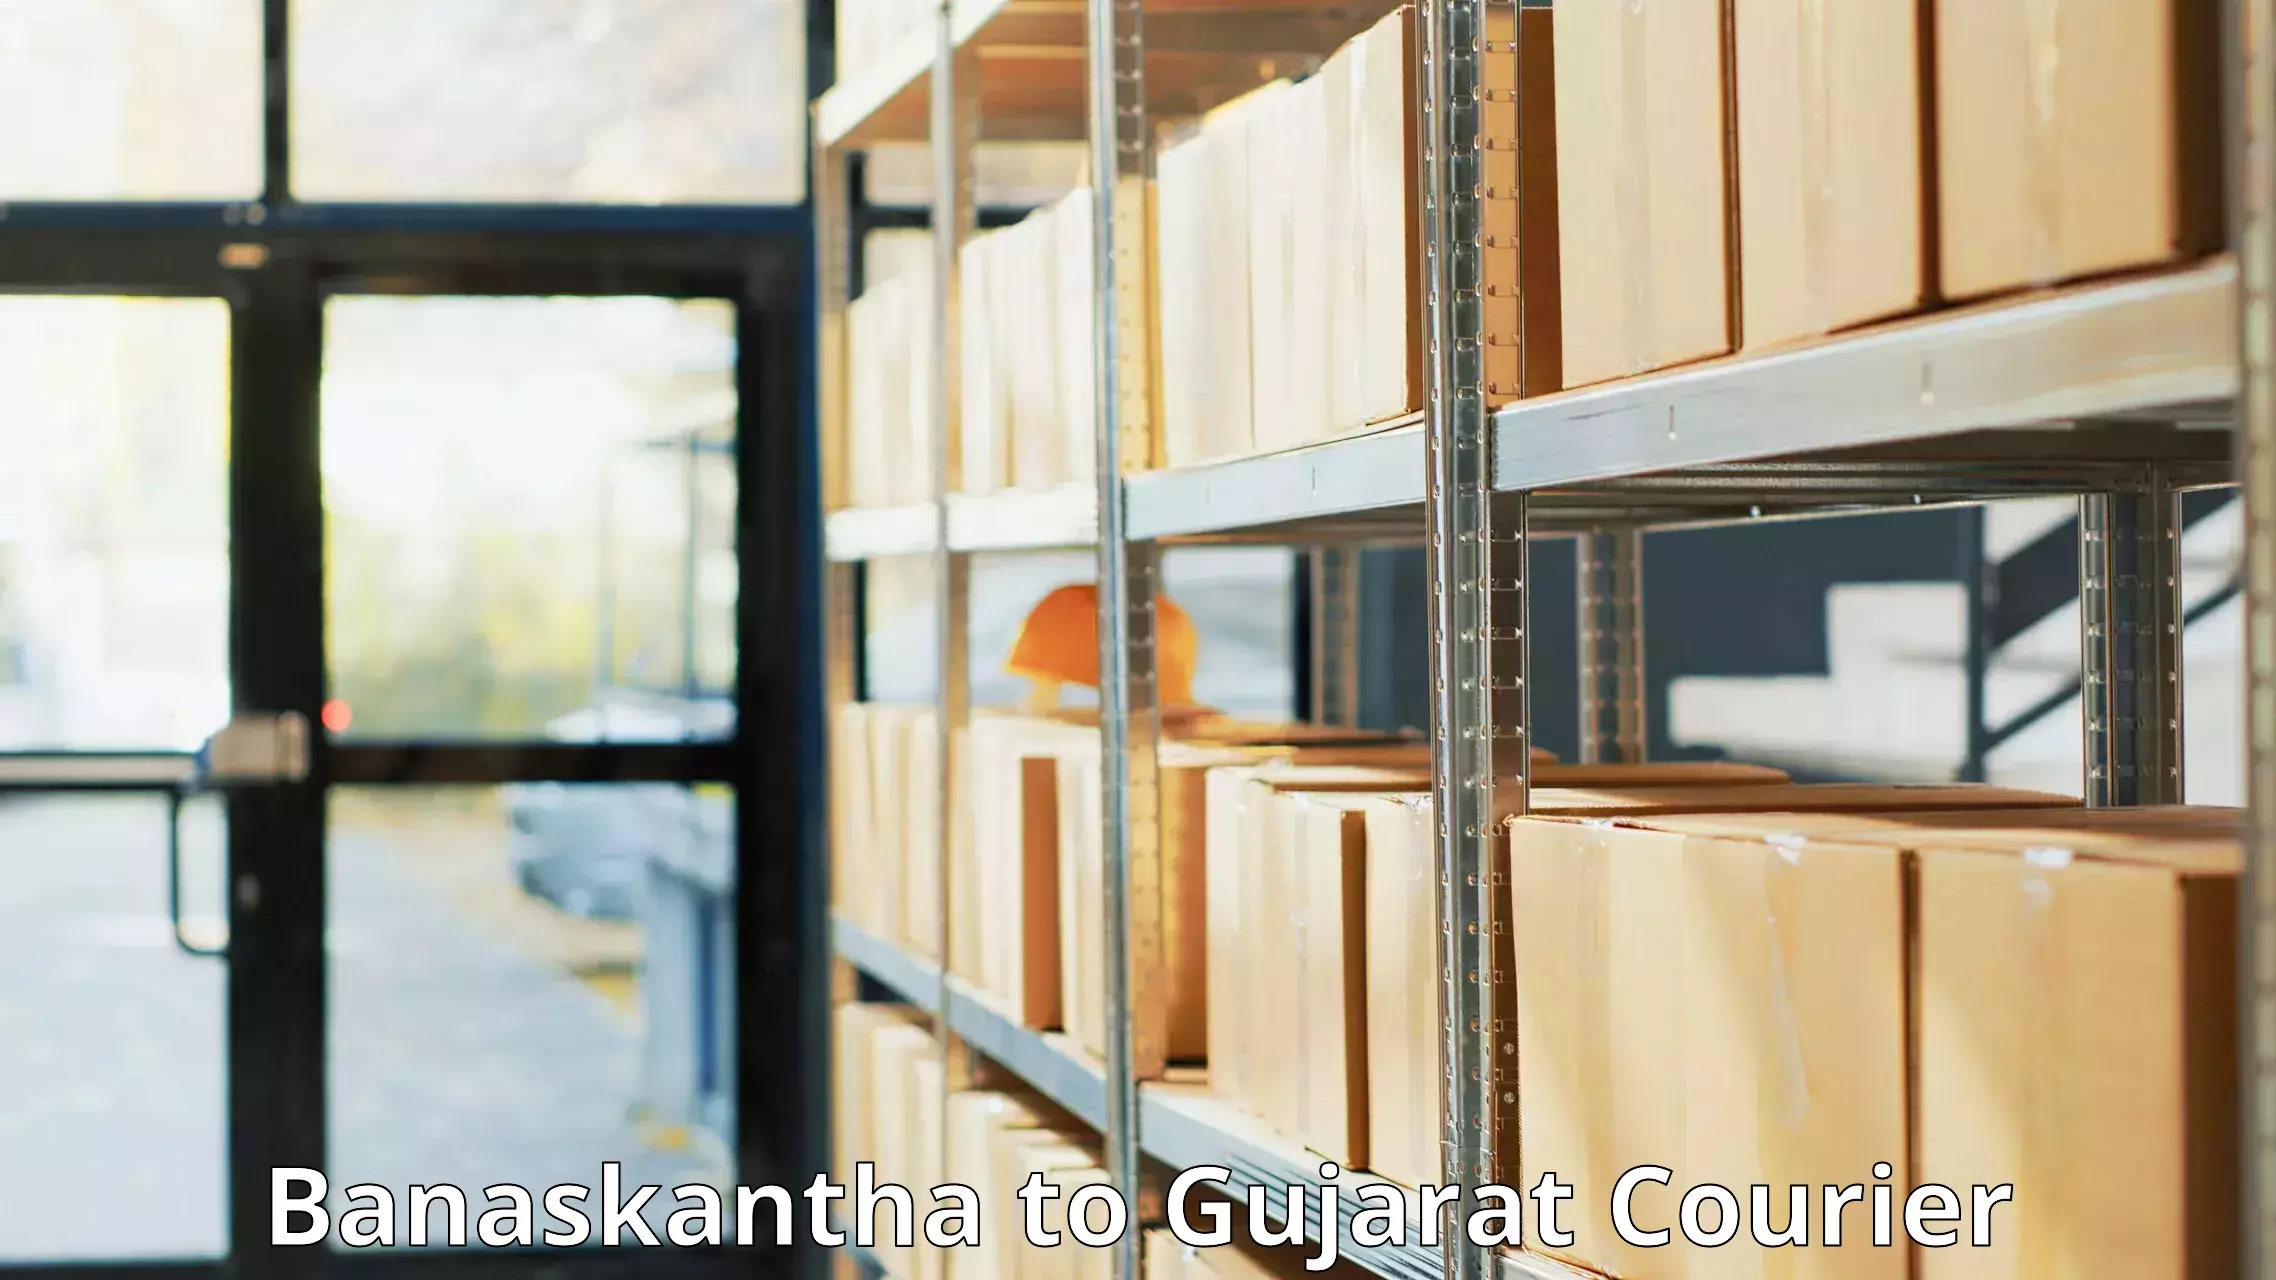 Global courier networks in Banaskantha to Dhoraji